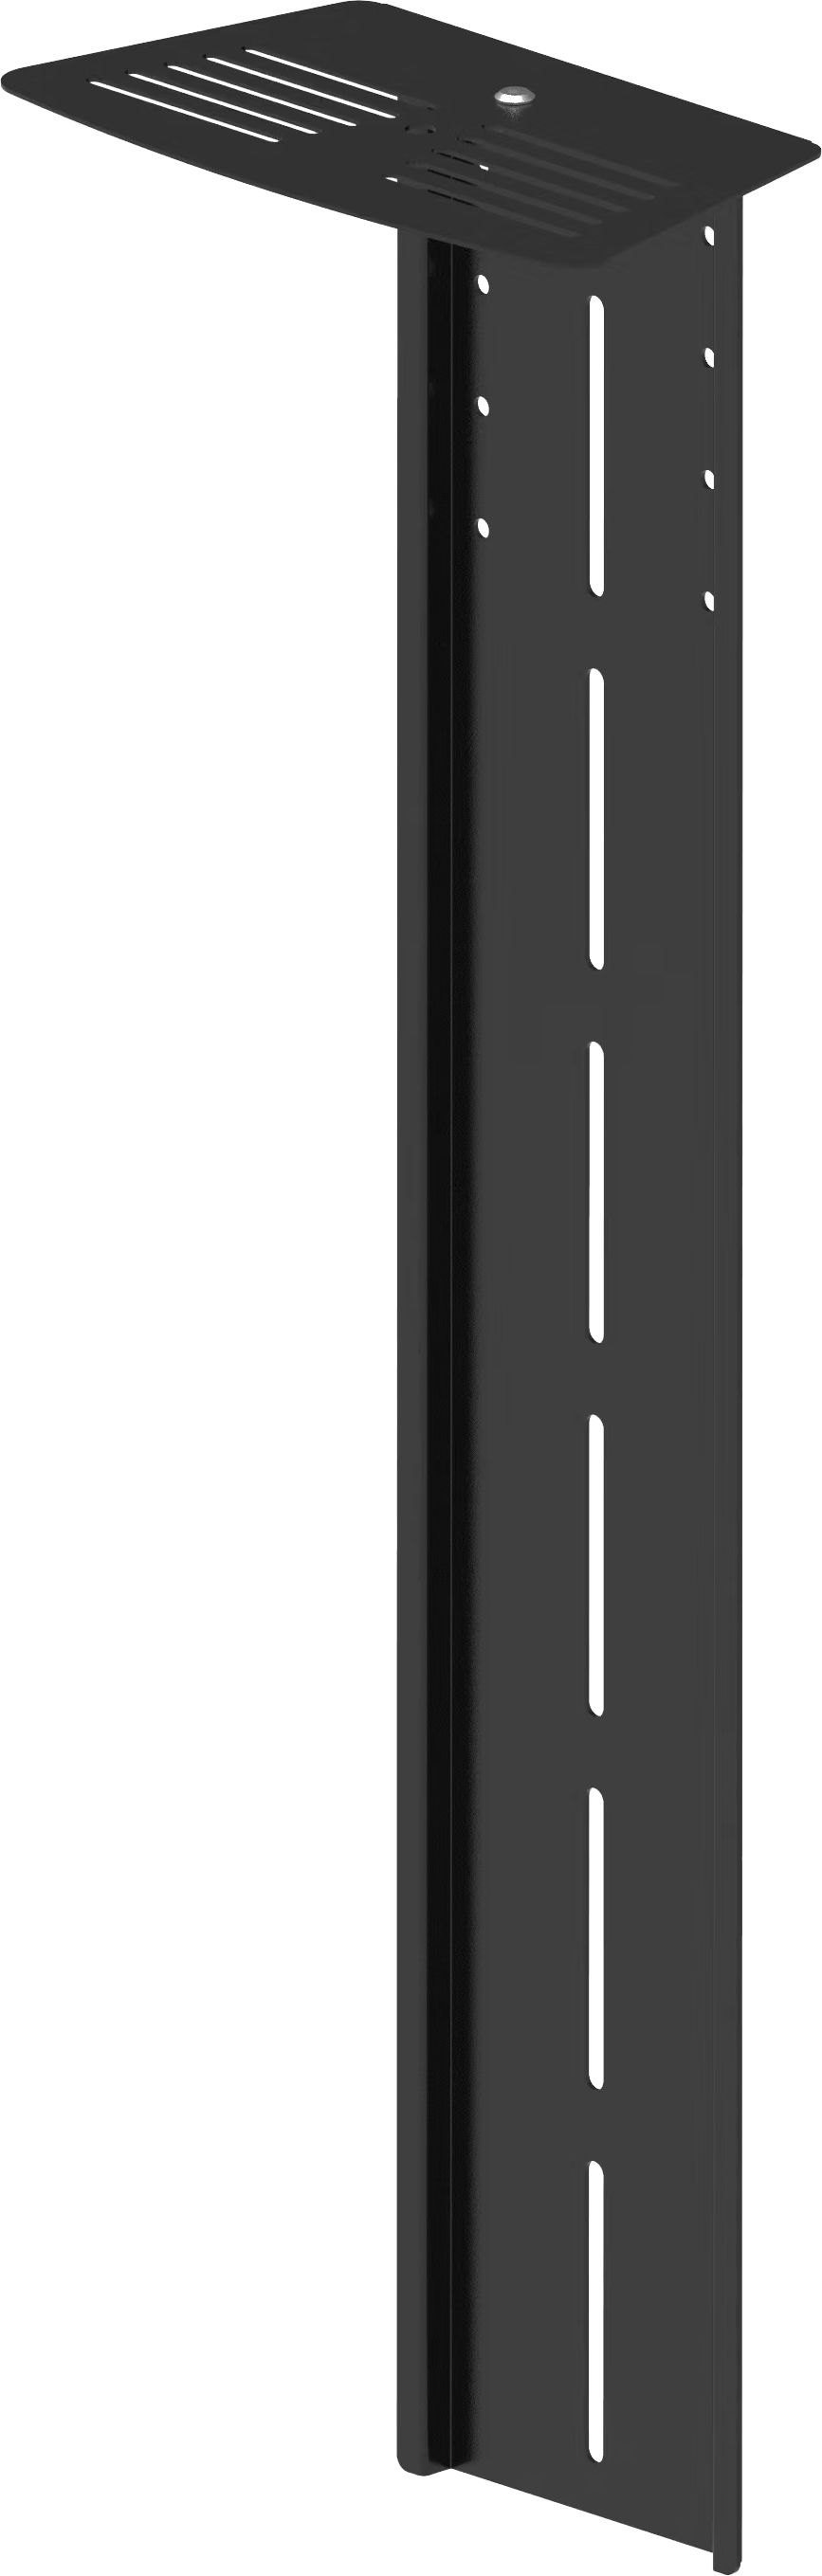 An image showing Vægmonteret videokonferencehylde